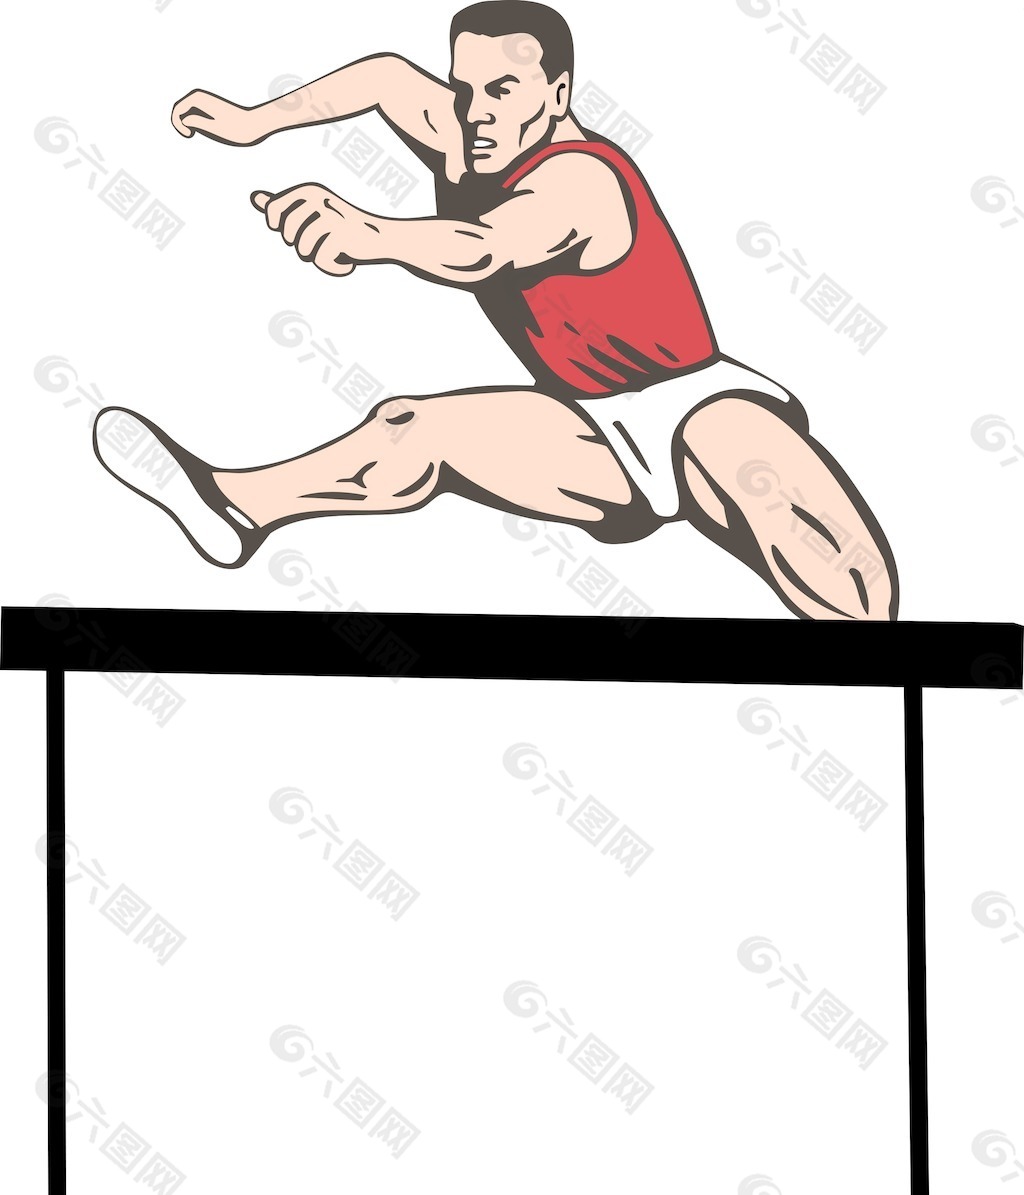 田径运动员跳跃障碍